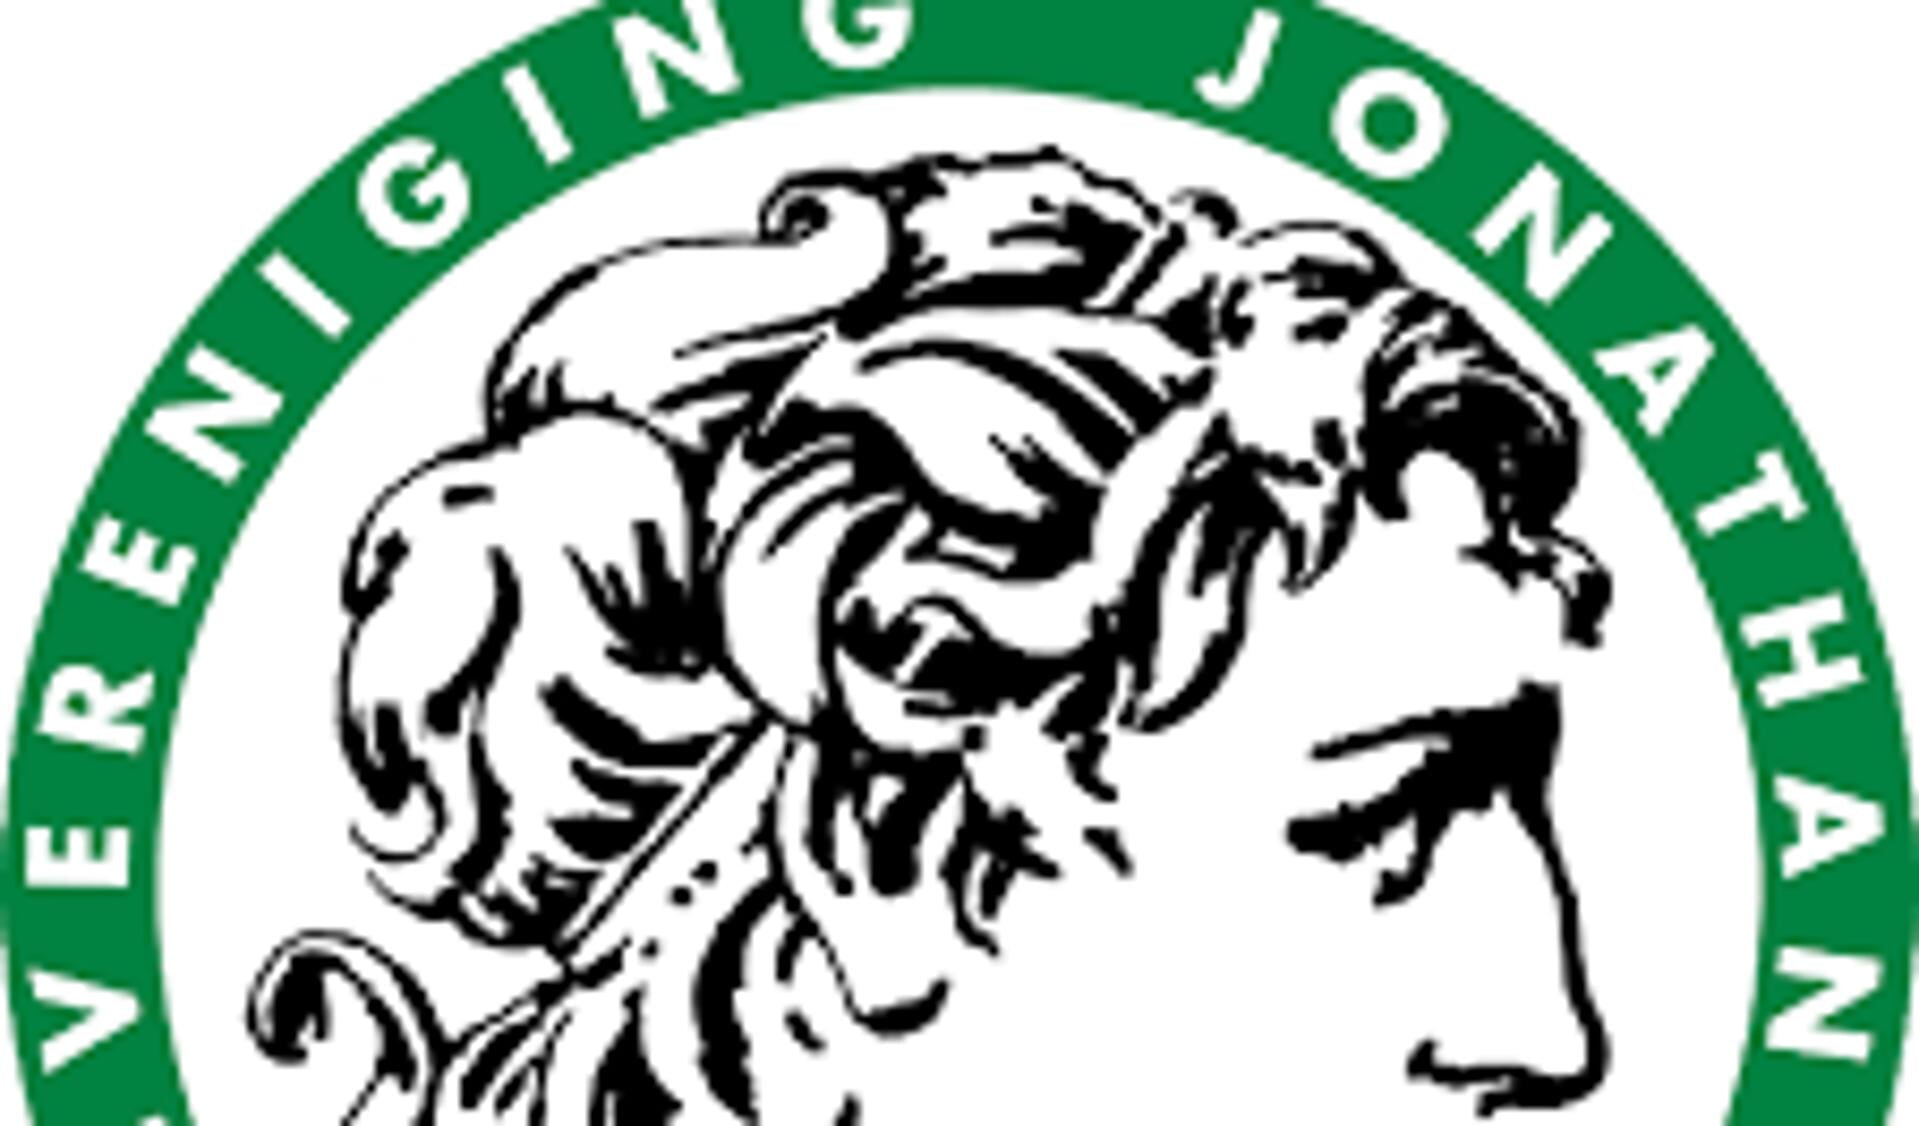 Het logo van Voetbalvereniging Johanthan